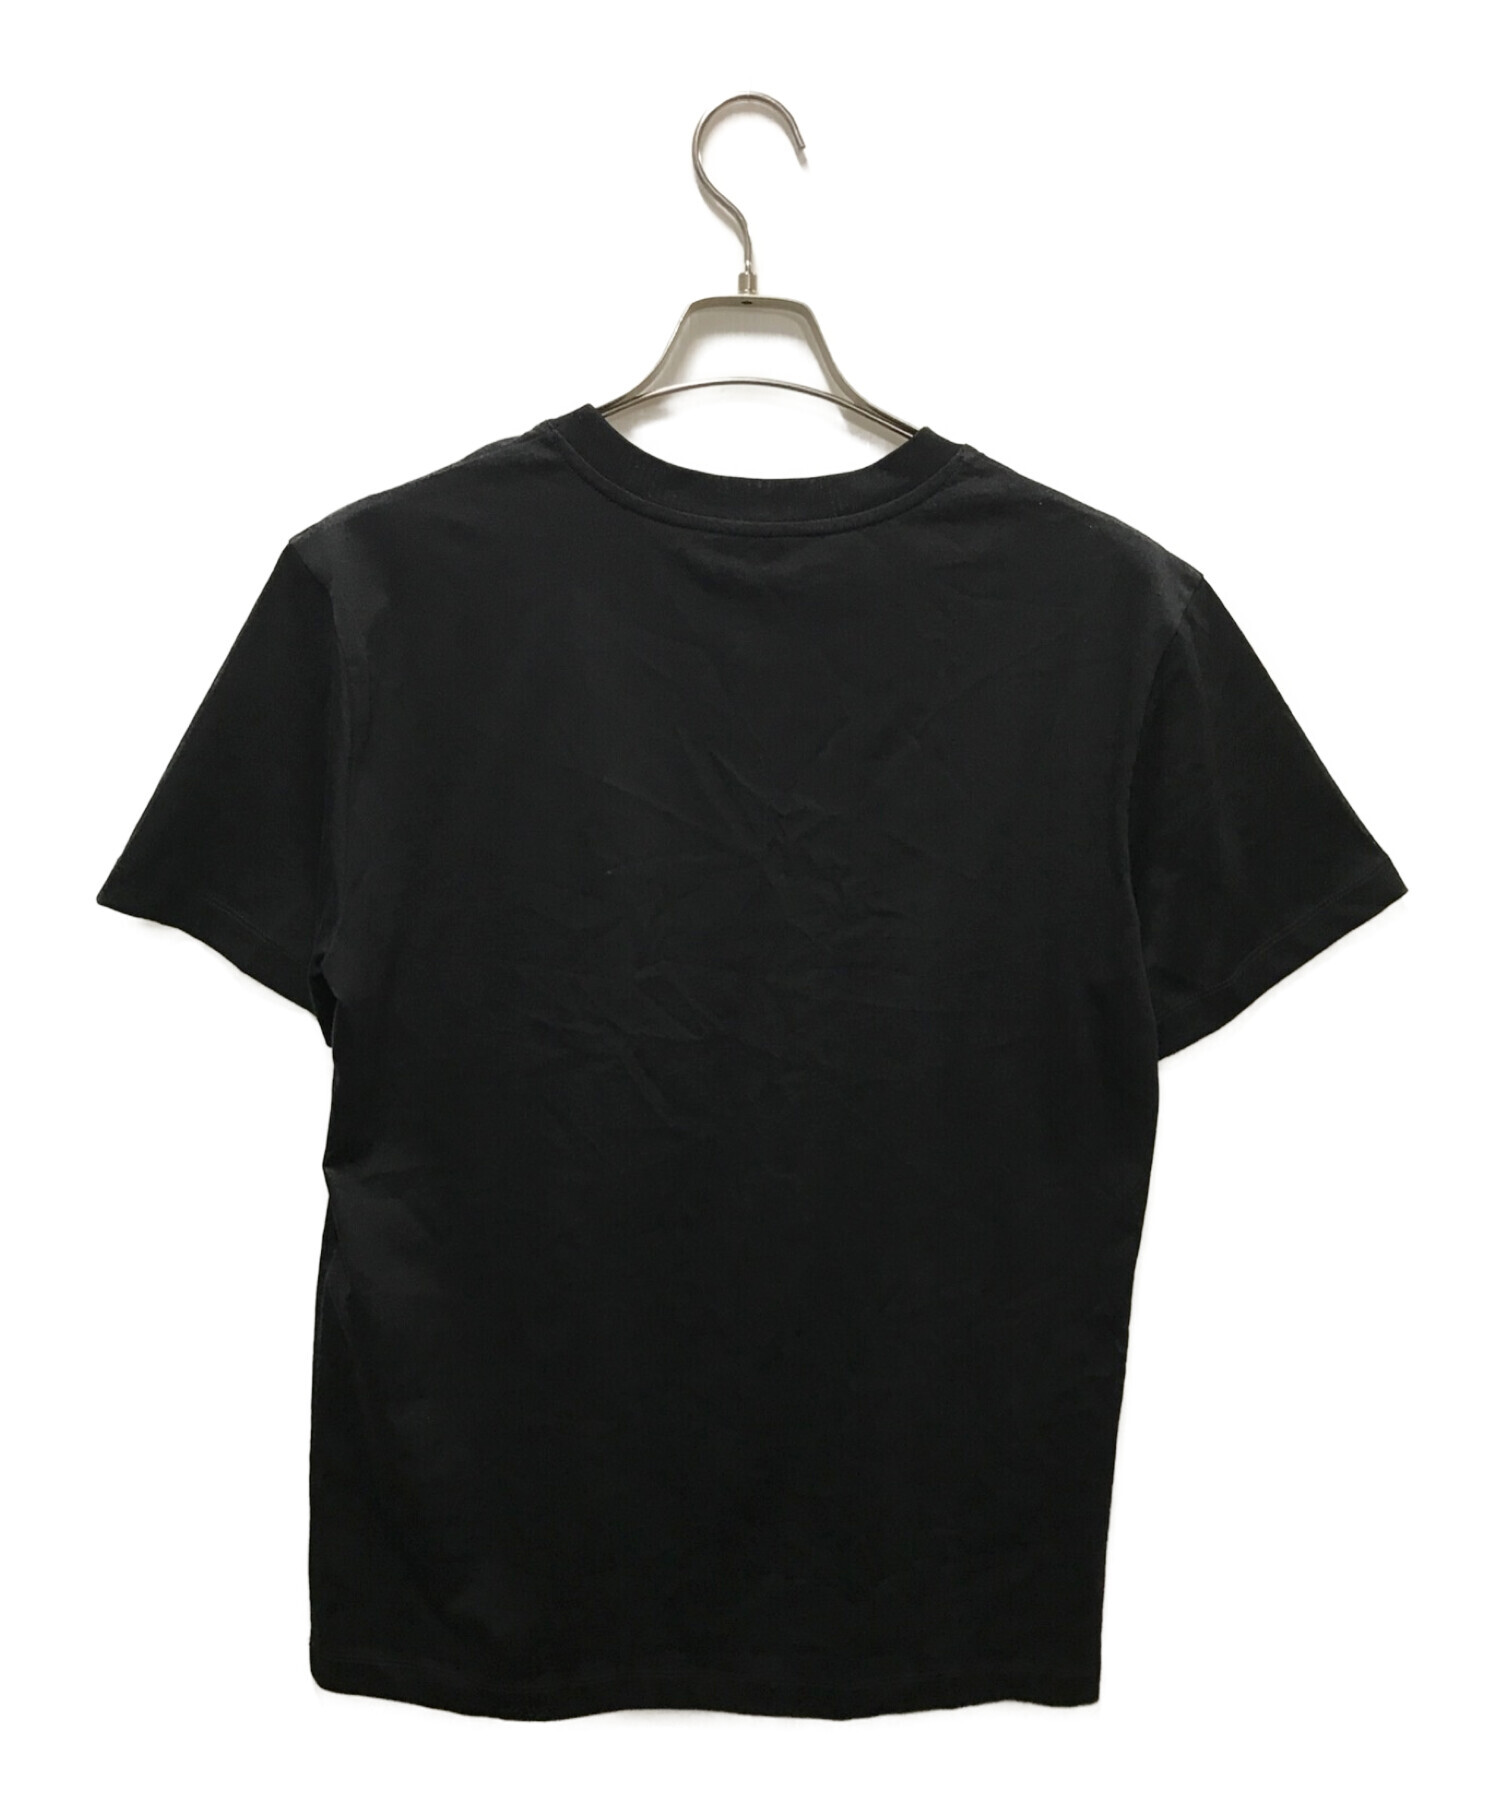 patou (パトゥ) オーガニックコットンロゴTシャツ ブラック サイズ:M